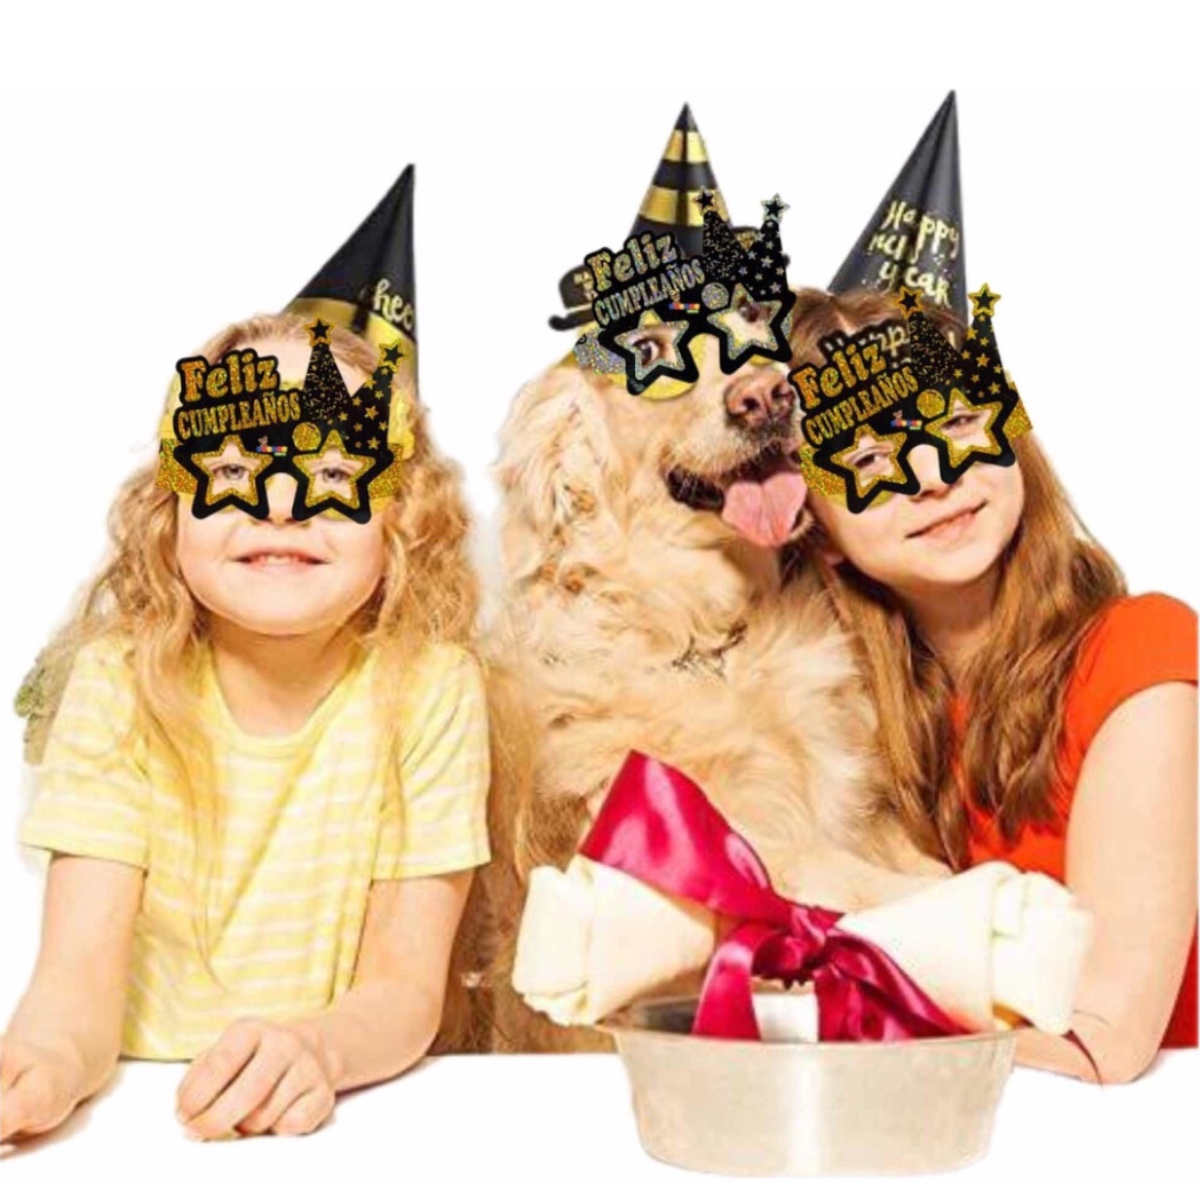  VGSEBA Gafas de cumpleaños, 2 pares de divertidas gafas de  fiesta de cumpleaños para accesorios de cabina de fotos para niños,  adultos, suministros de fiesta y decoraciones de feliz cumpleaños 